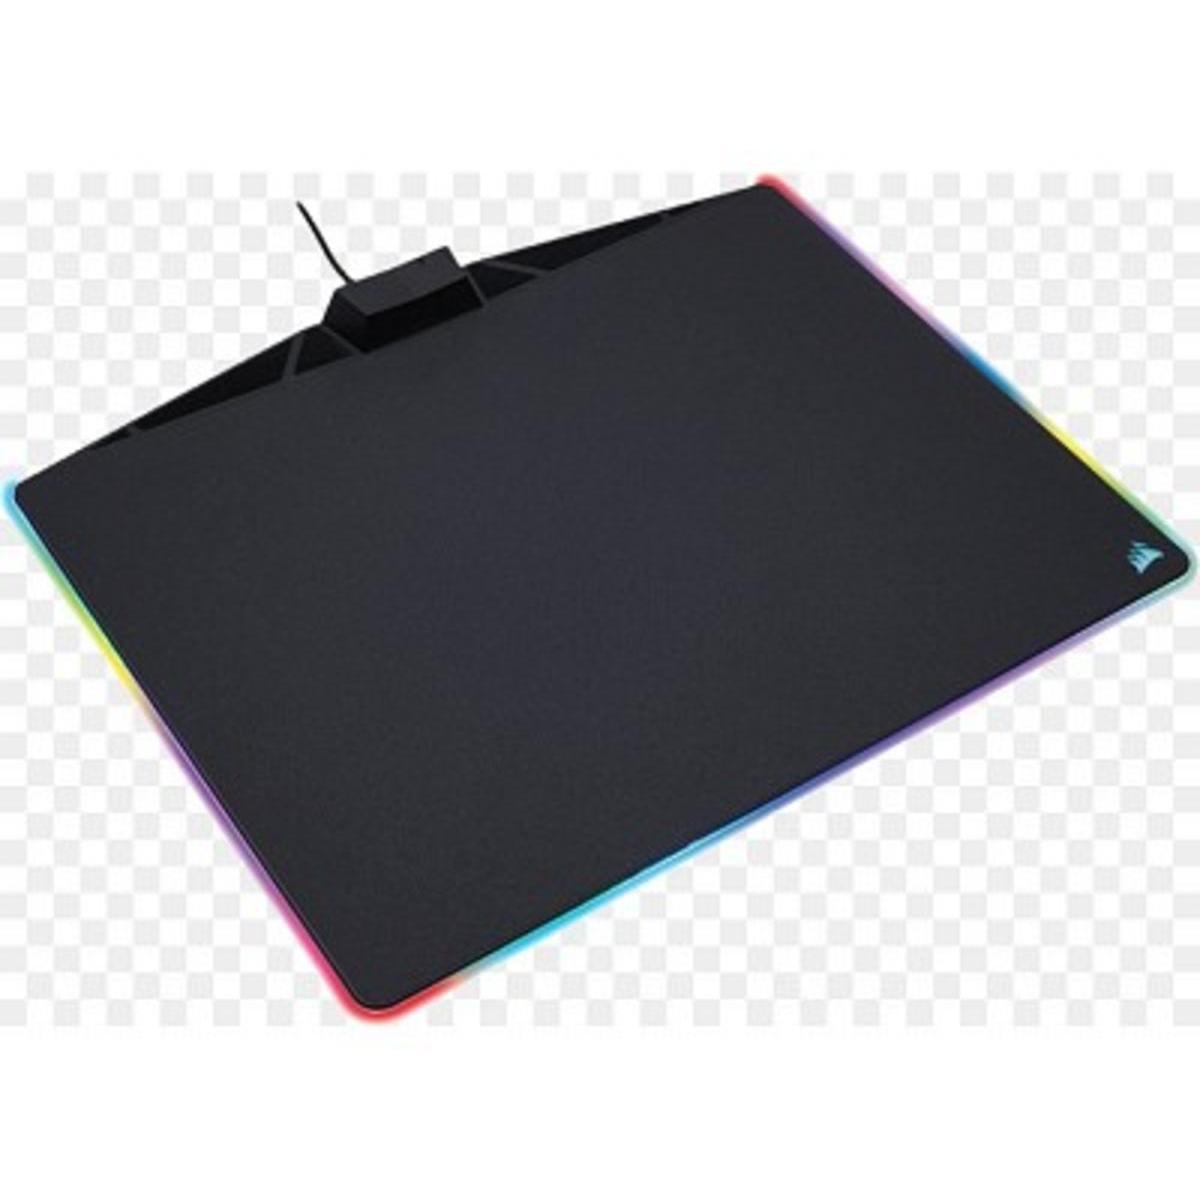 Tapis de souris gamer - L 36 x l 28 cm - Noir, multicolore